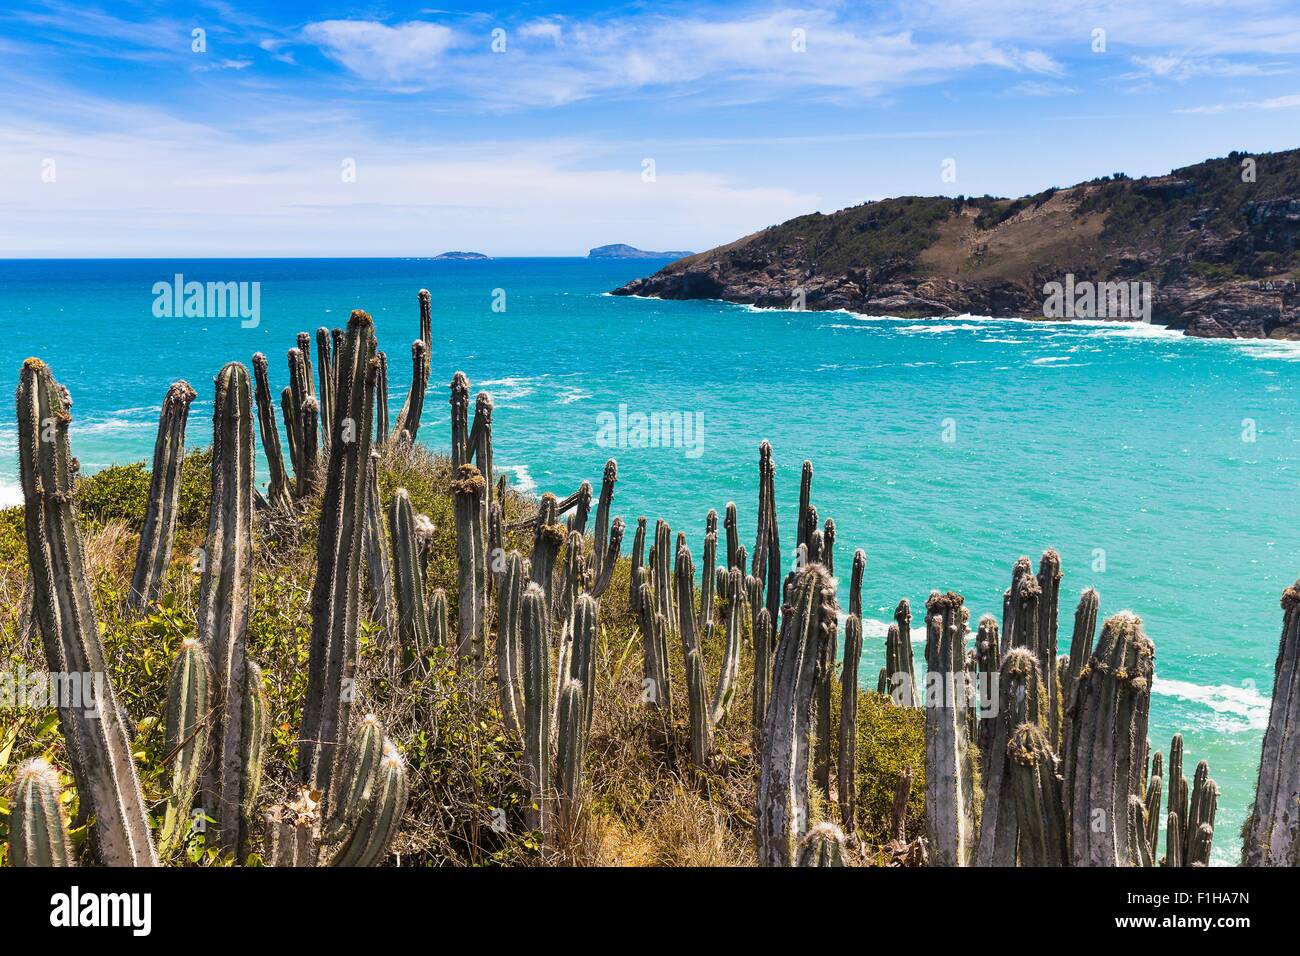 View of cacti and coast at Boca da Barra, Buzios, Rio de Janeiro, Brazil Stock Photo